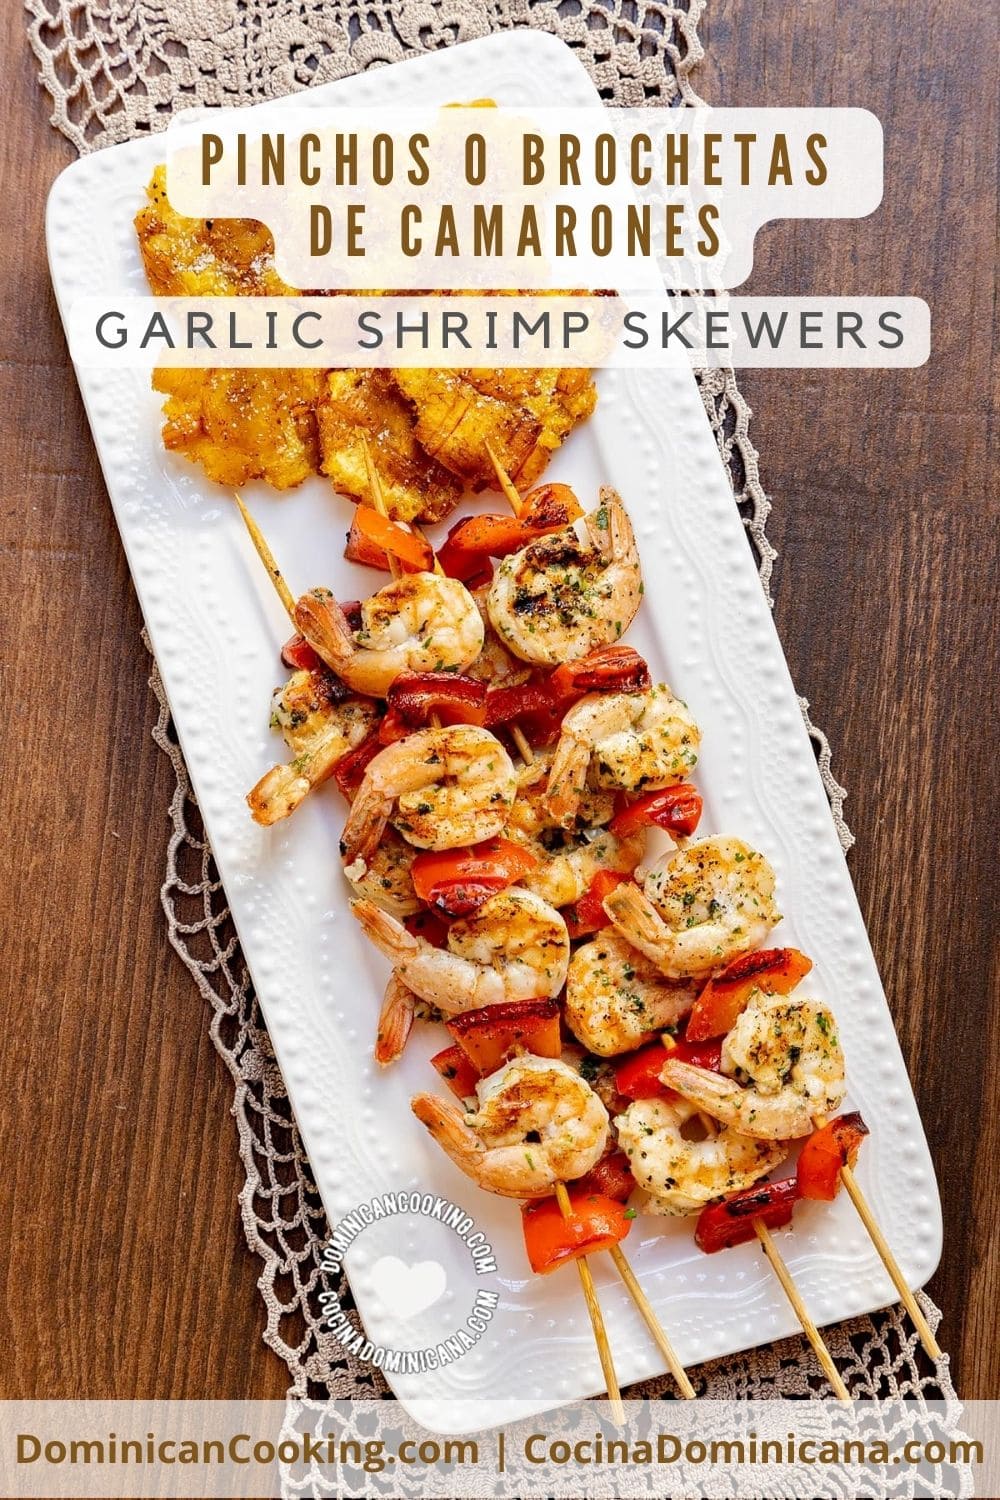 Garlic shrimp skewers (pinchos de camarones) recipe.